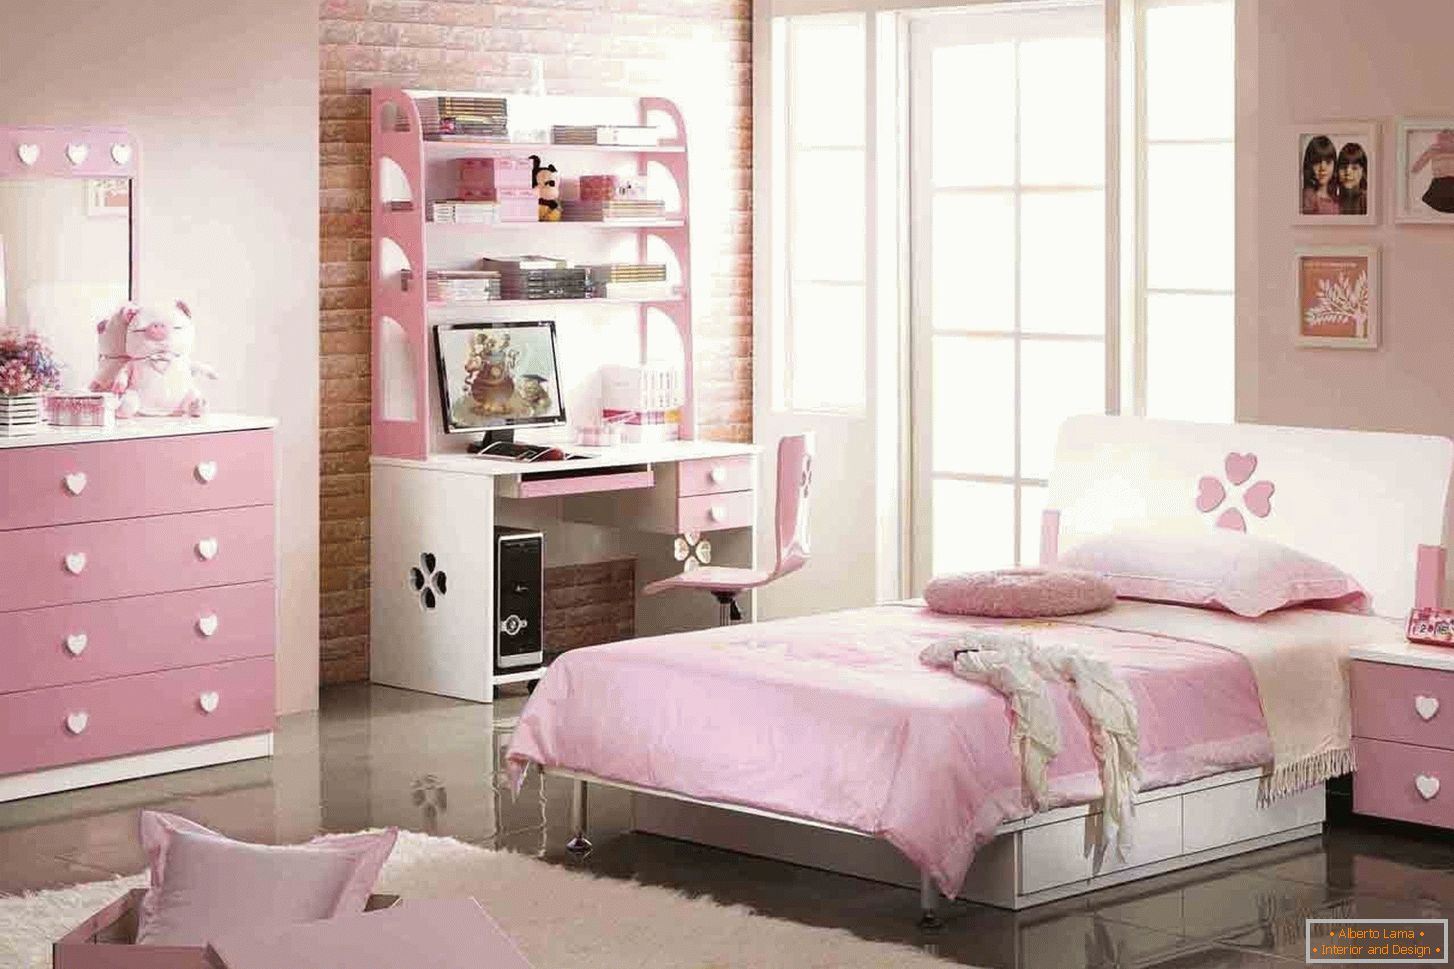 Oblikovanje spalnice za najstnika v roza barvi